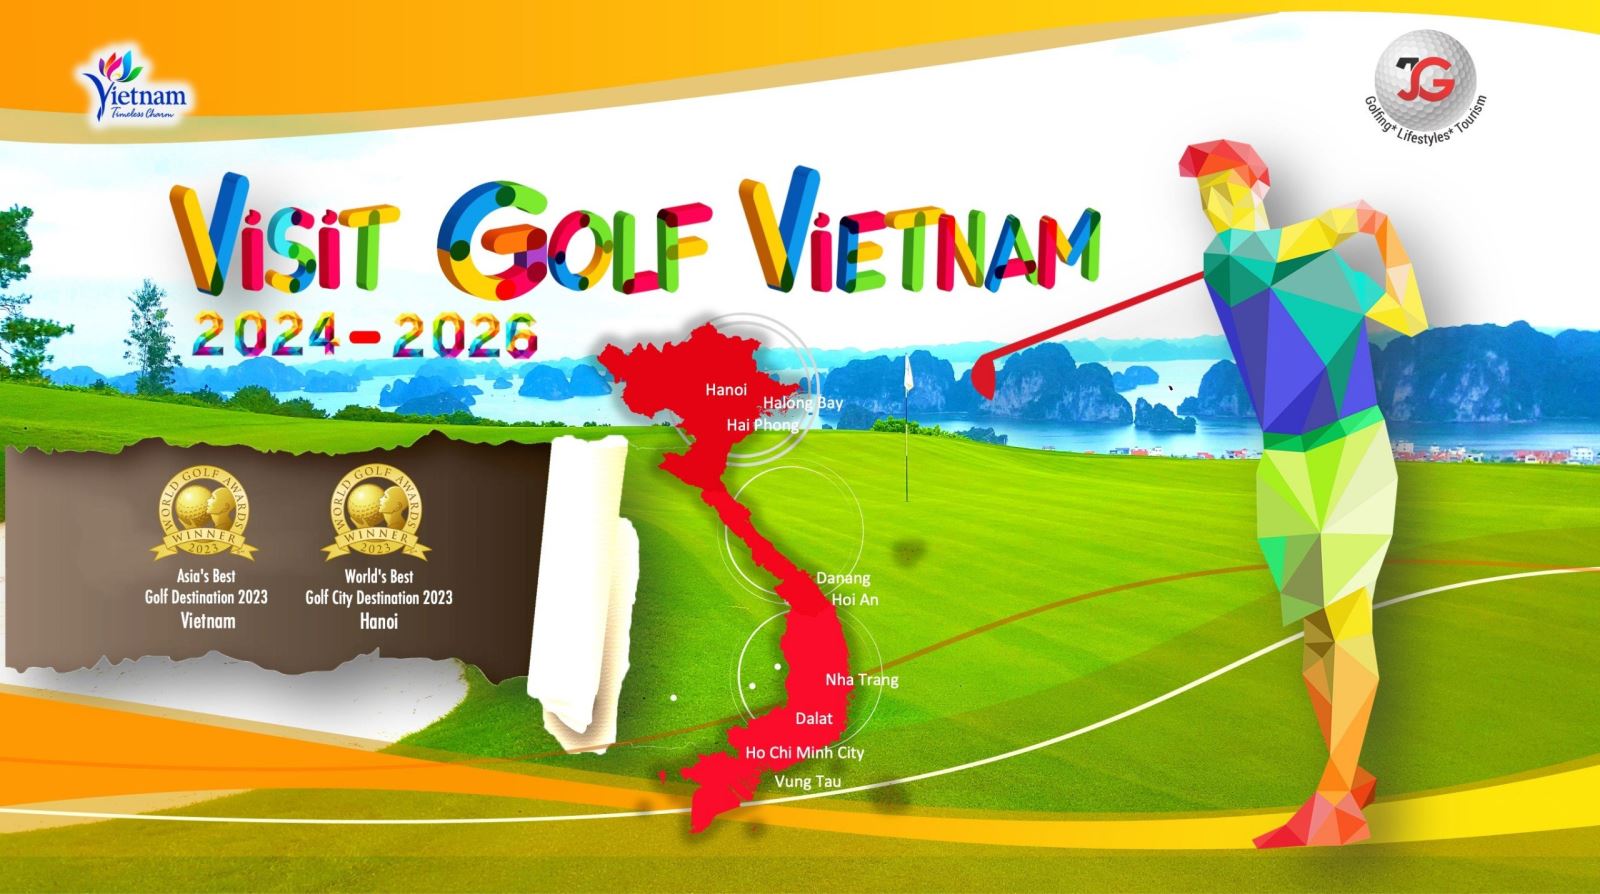 Visit Golf Vietnam 